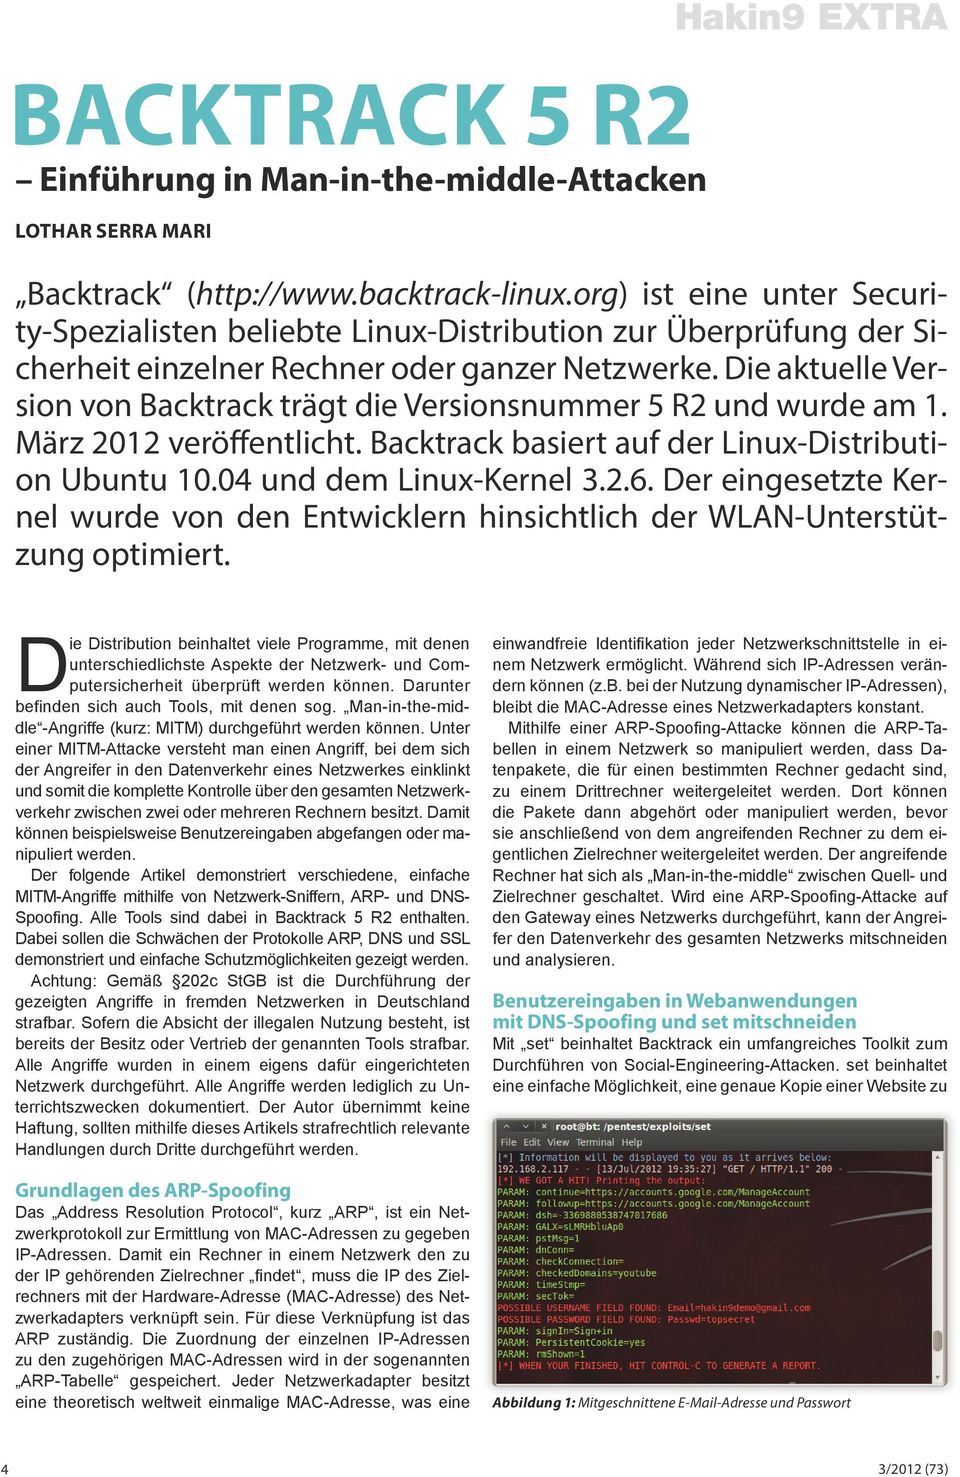 Die aktuelle Version von Backtrack trägt die Versionsnummer 5 R2 und wurde am 1. März 2012 veröffentlicht. Backtrack basiert auf der Linux-Distribution Ubuntu 10.04 und dem Linux-Kernel 3.2.6.